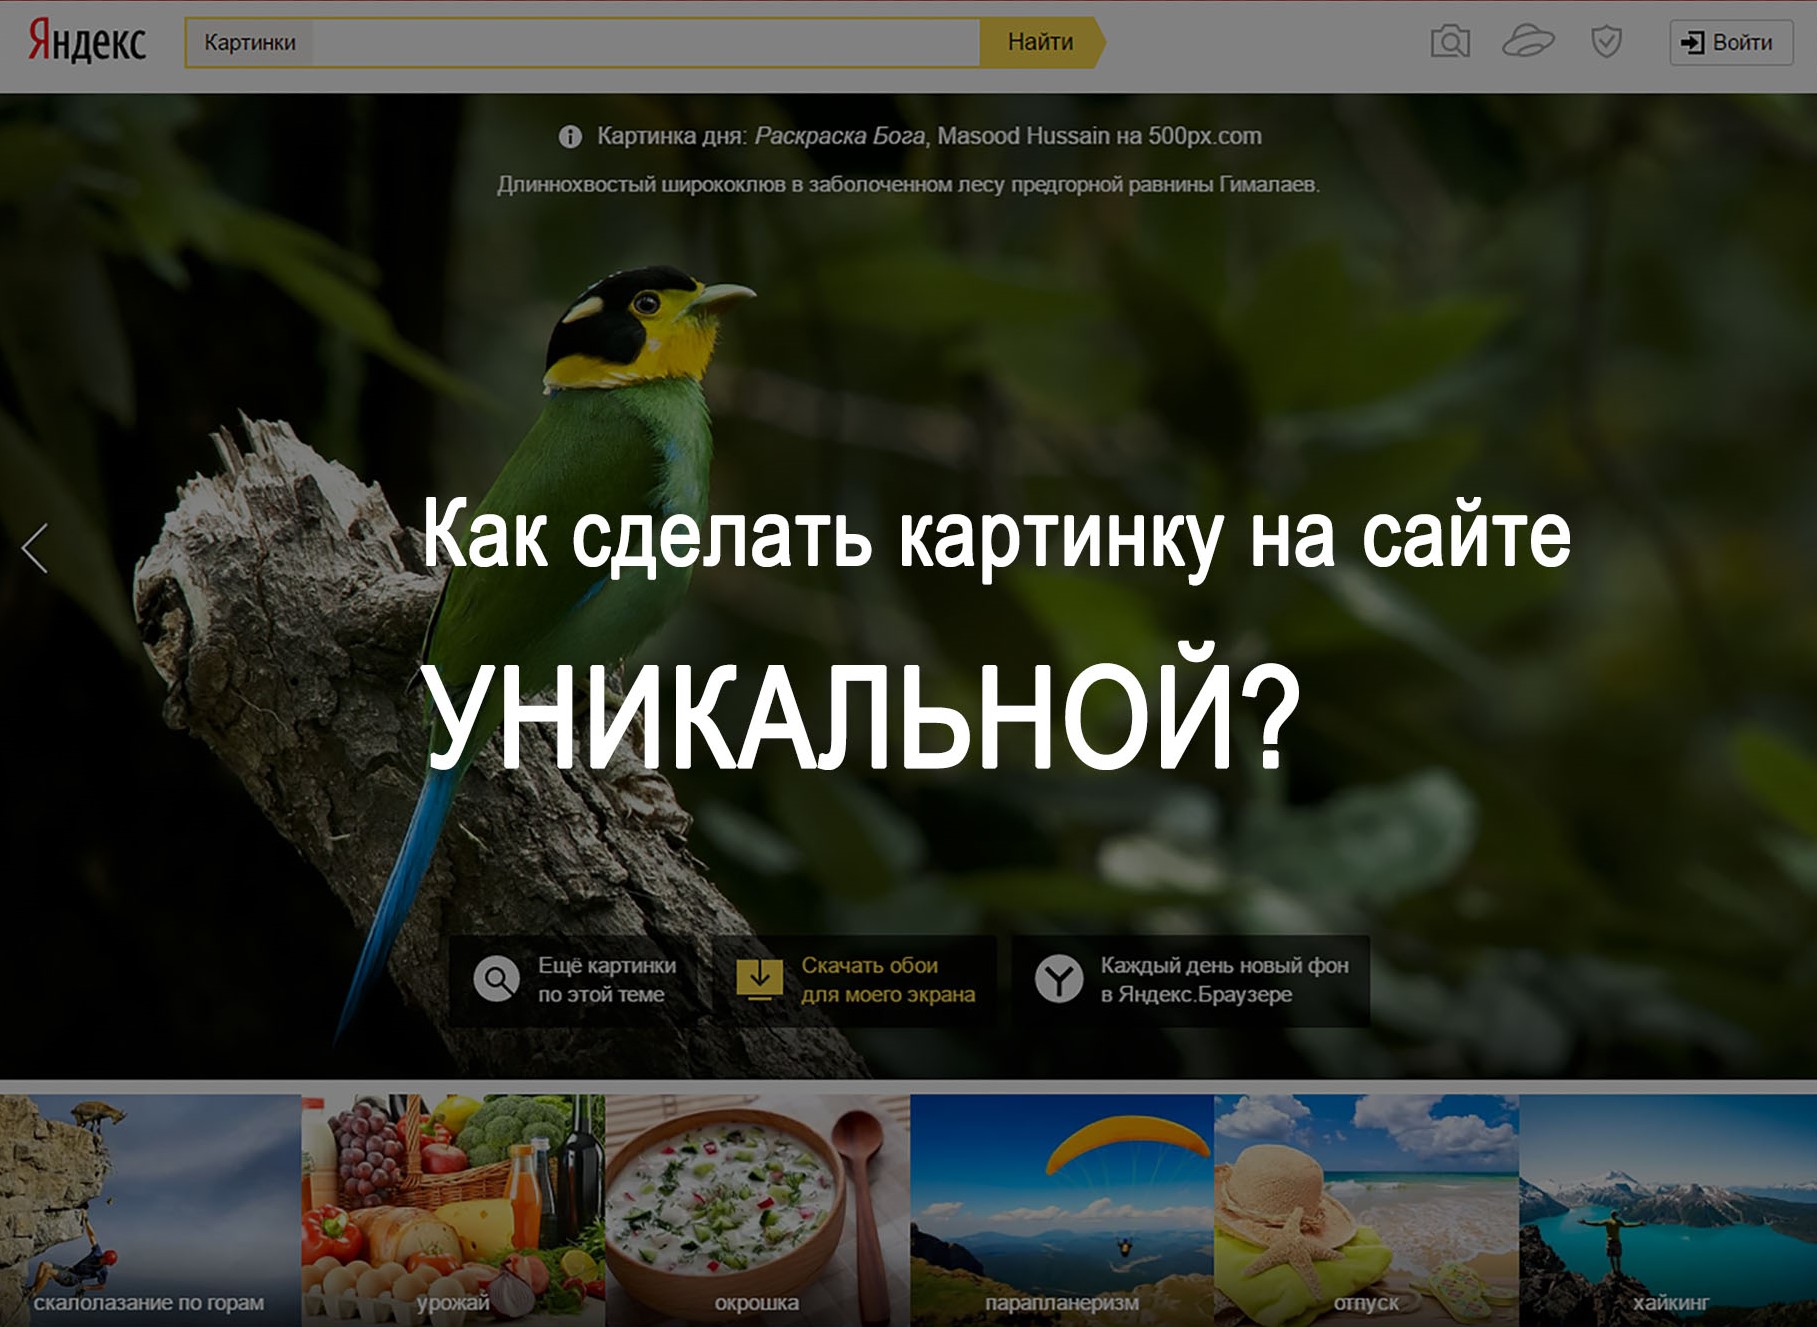 Как сделать картинку уникальной для Яндекса. Как сделать фото уникальным для Яндекса. Как сделать изображение уникальным. Как сделать картинку уникальной для поисковиков. Сделать сайт уникальным